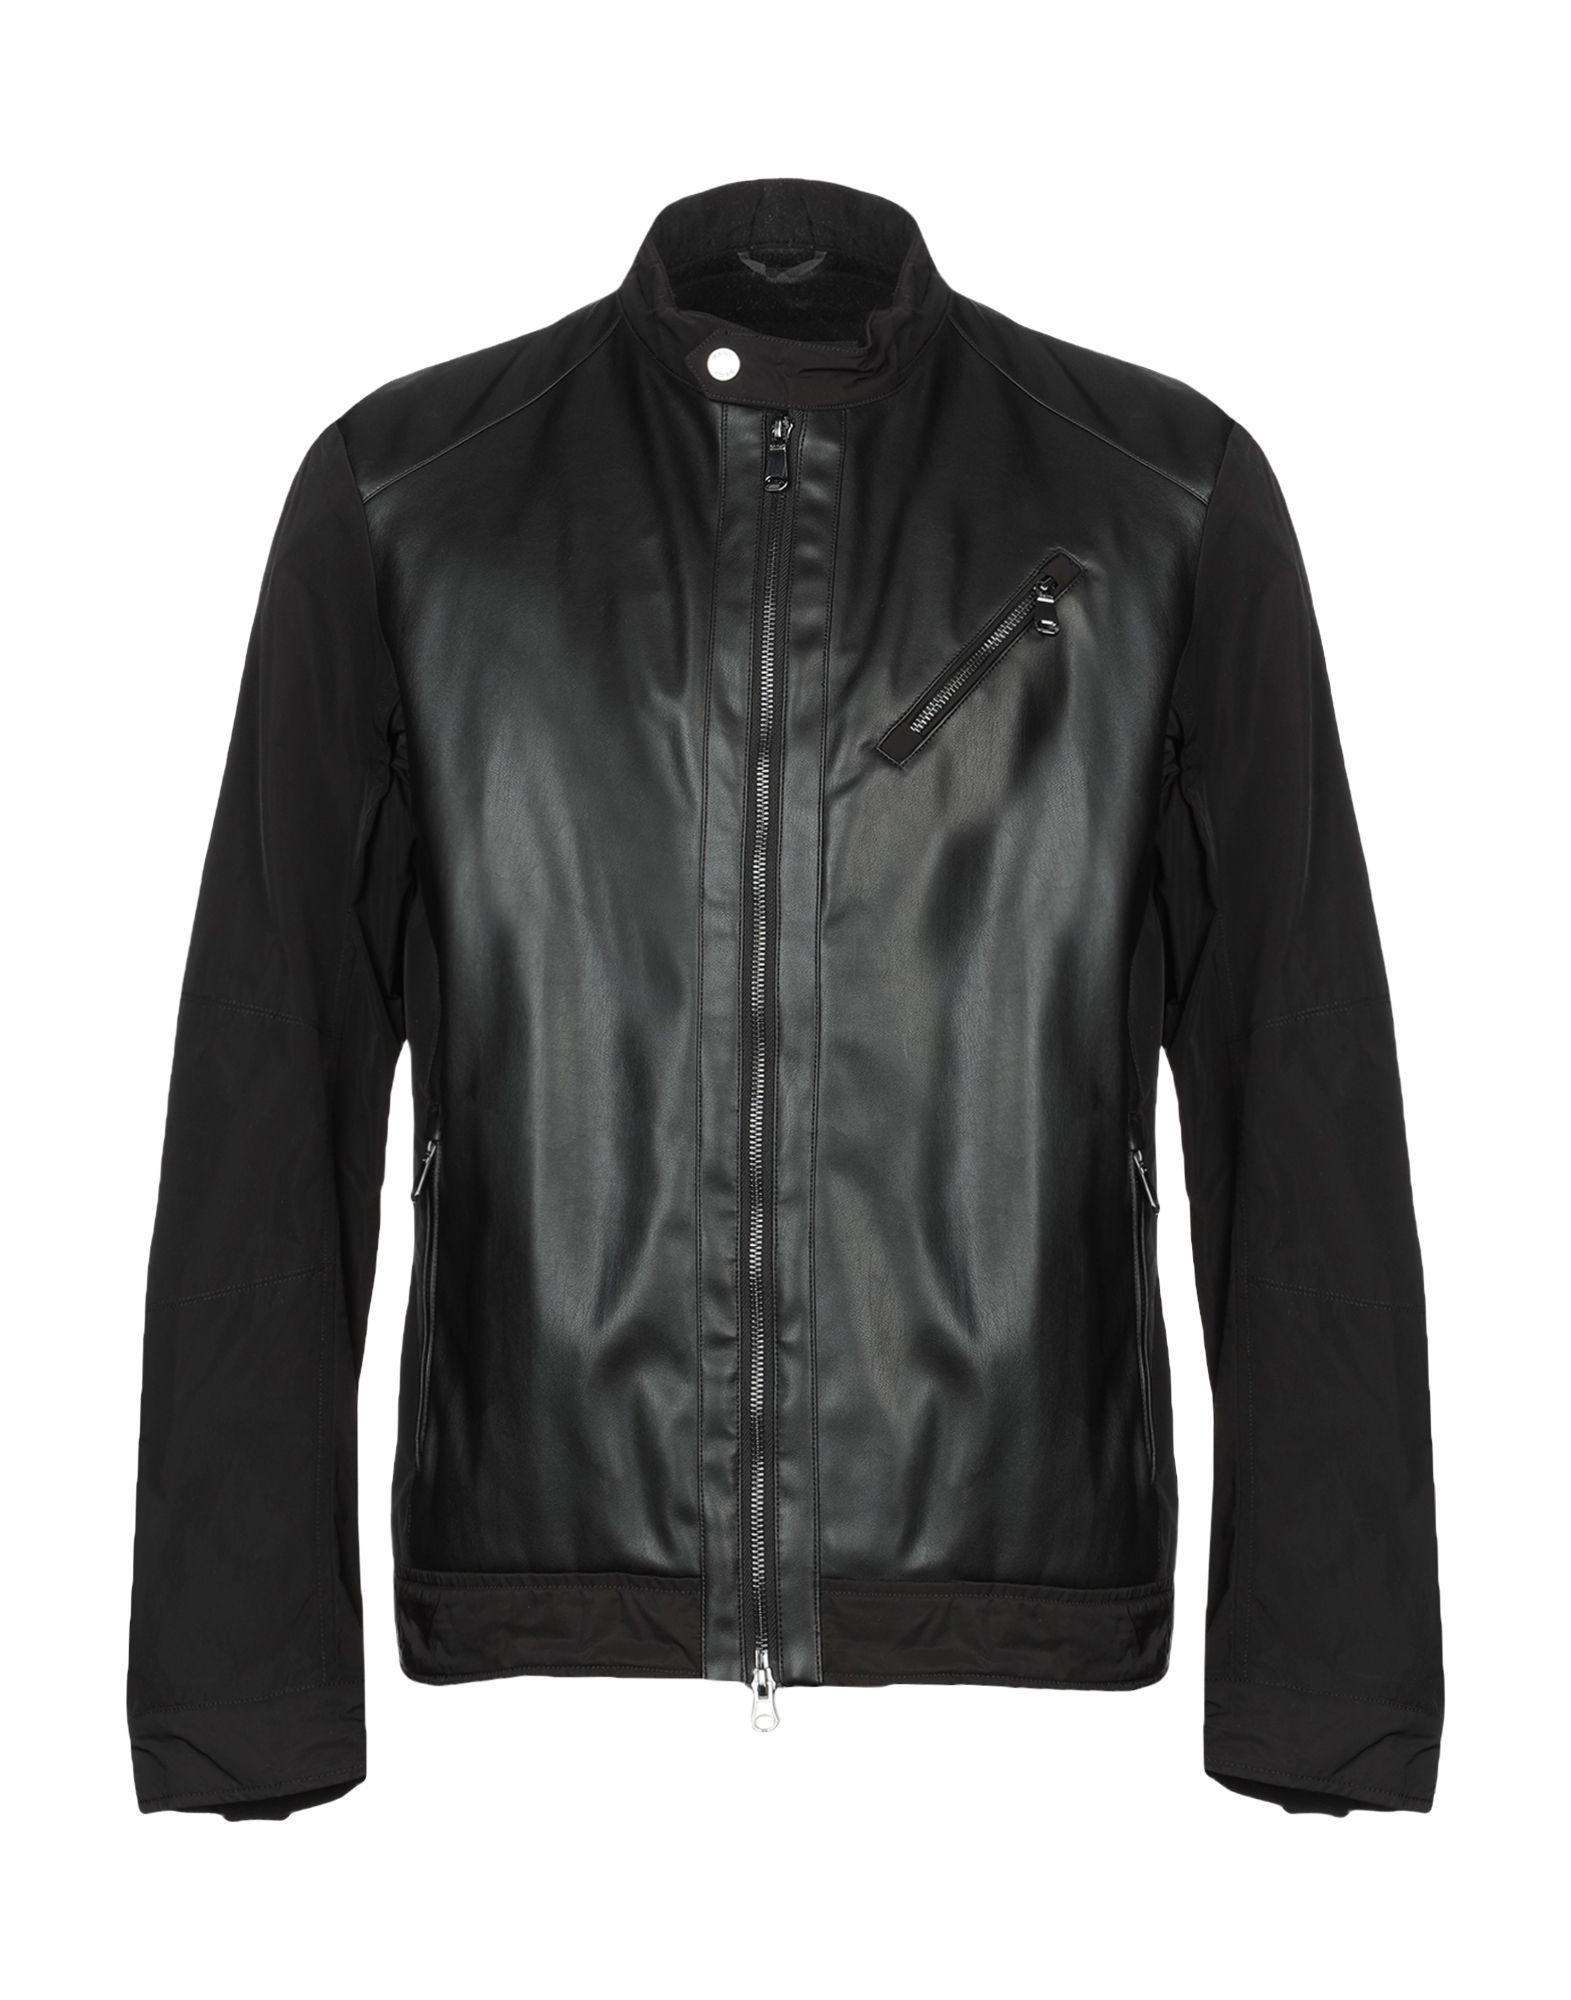 Geox Jacket in Black for Men - Lyst